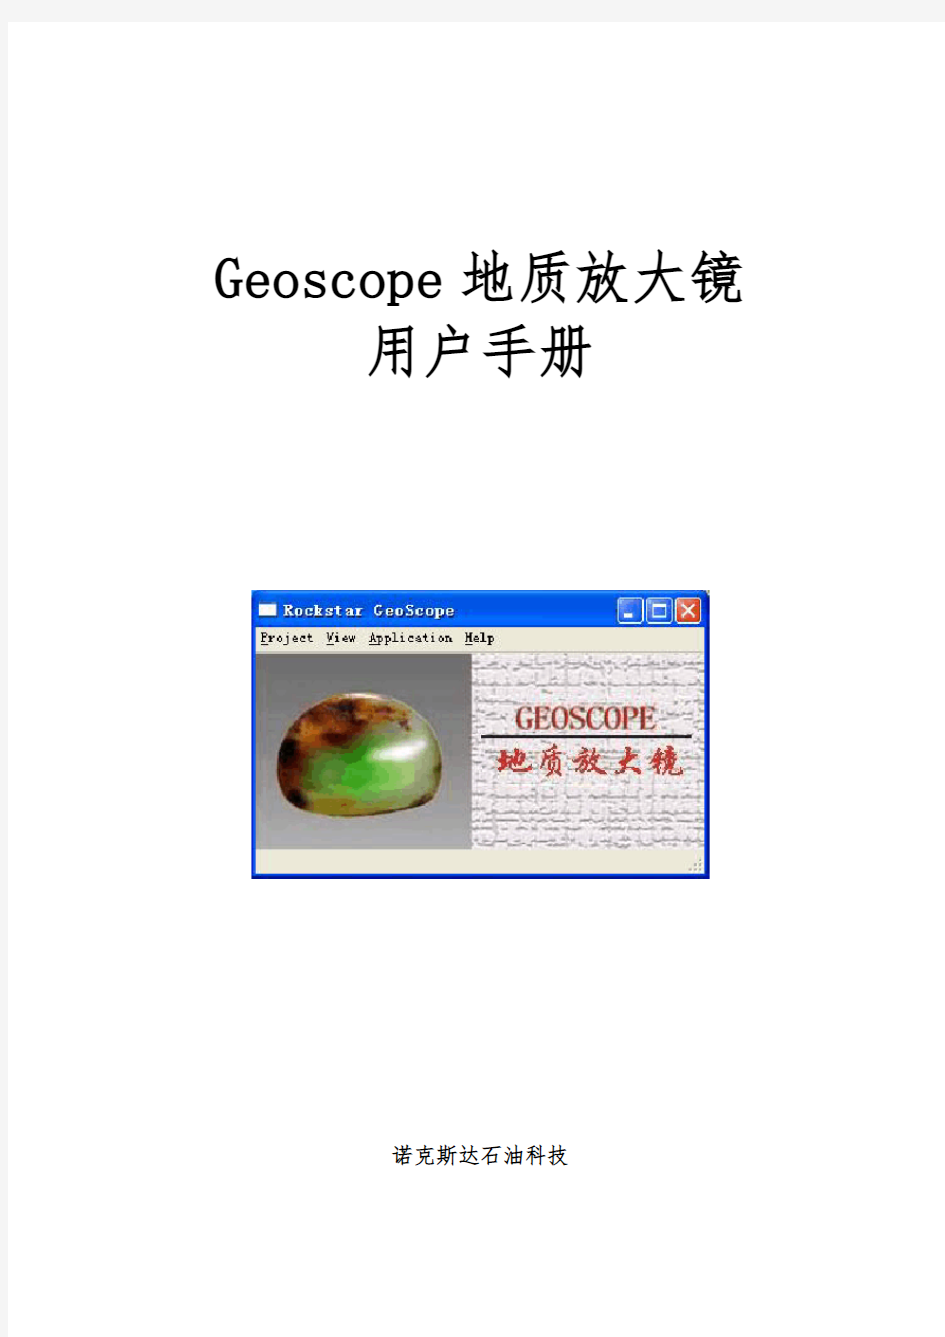 Geoscope用户手册(最新)